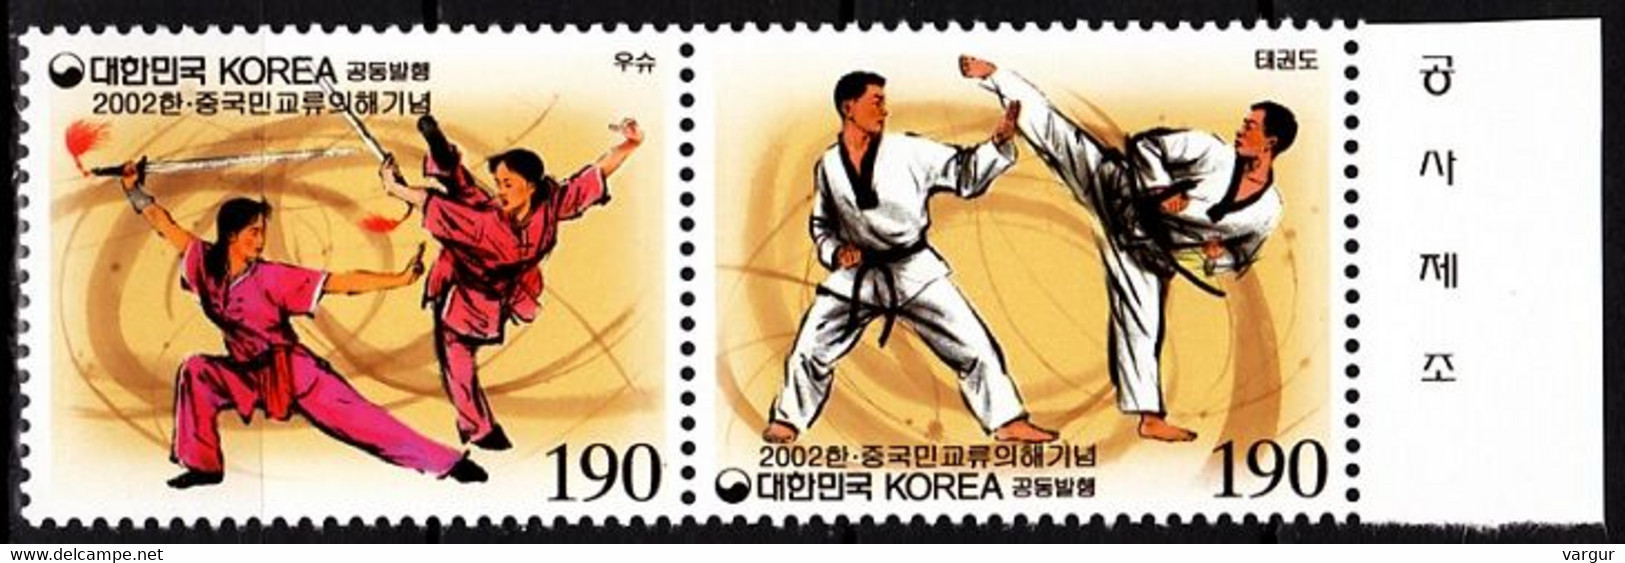 KOREA SOUTH 2002 Martial Sports: Teakwondo Kung-fu. Joint China. Pair, MNH - Gemeinschaftsausgaben